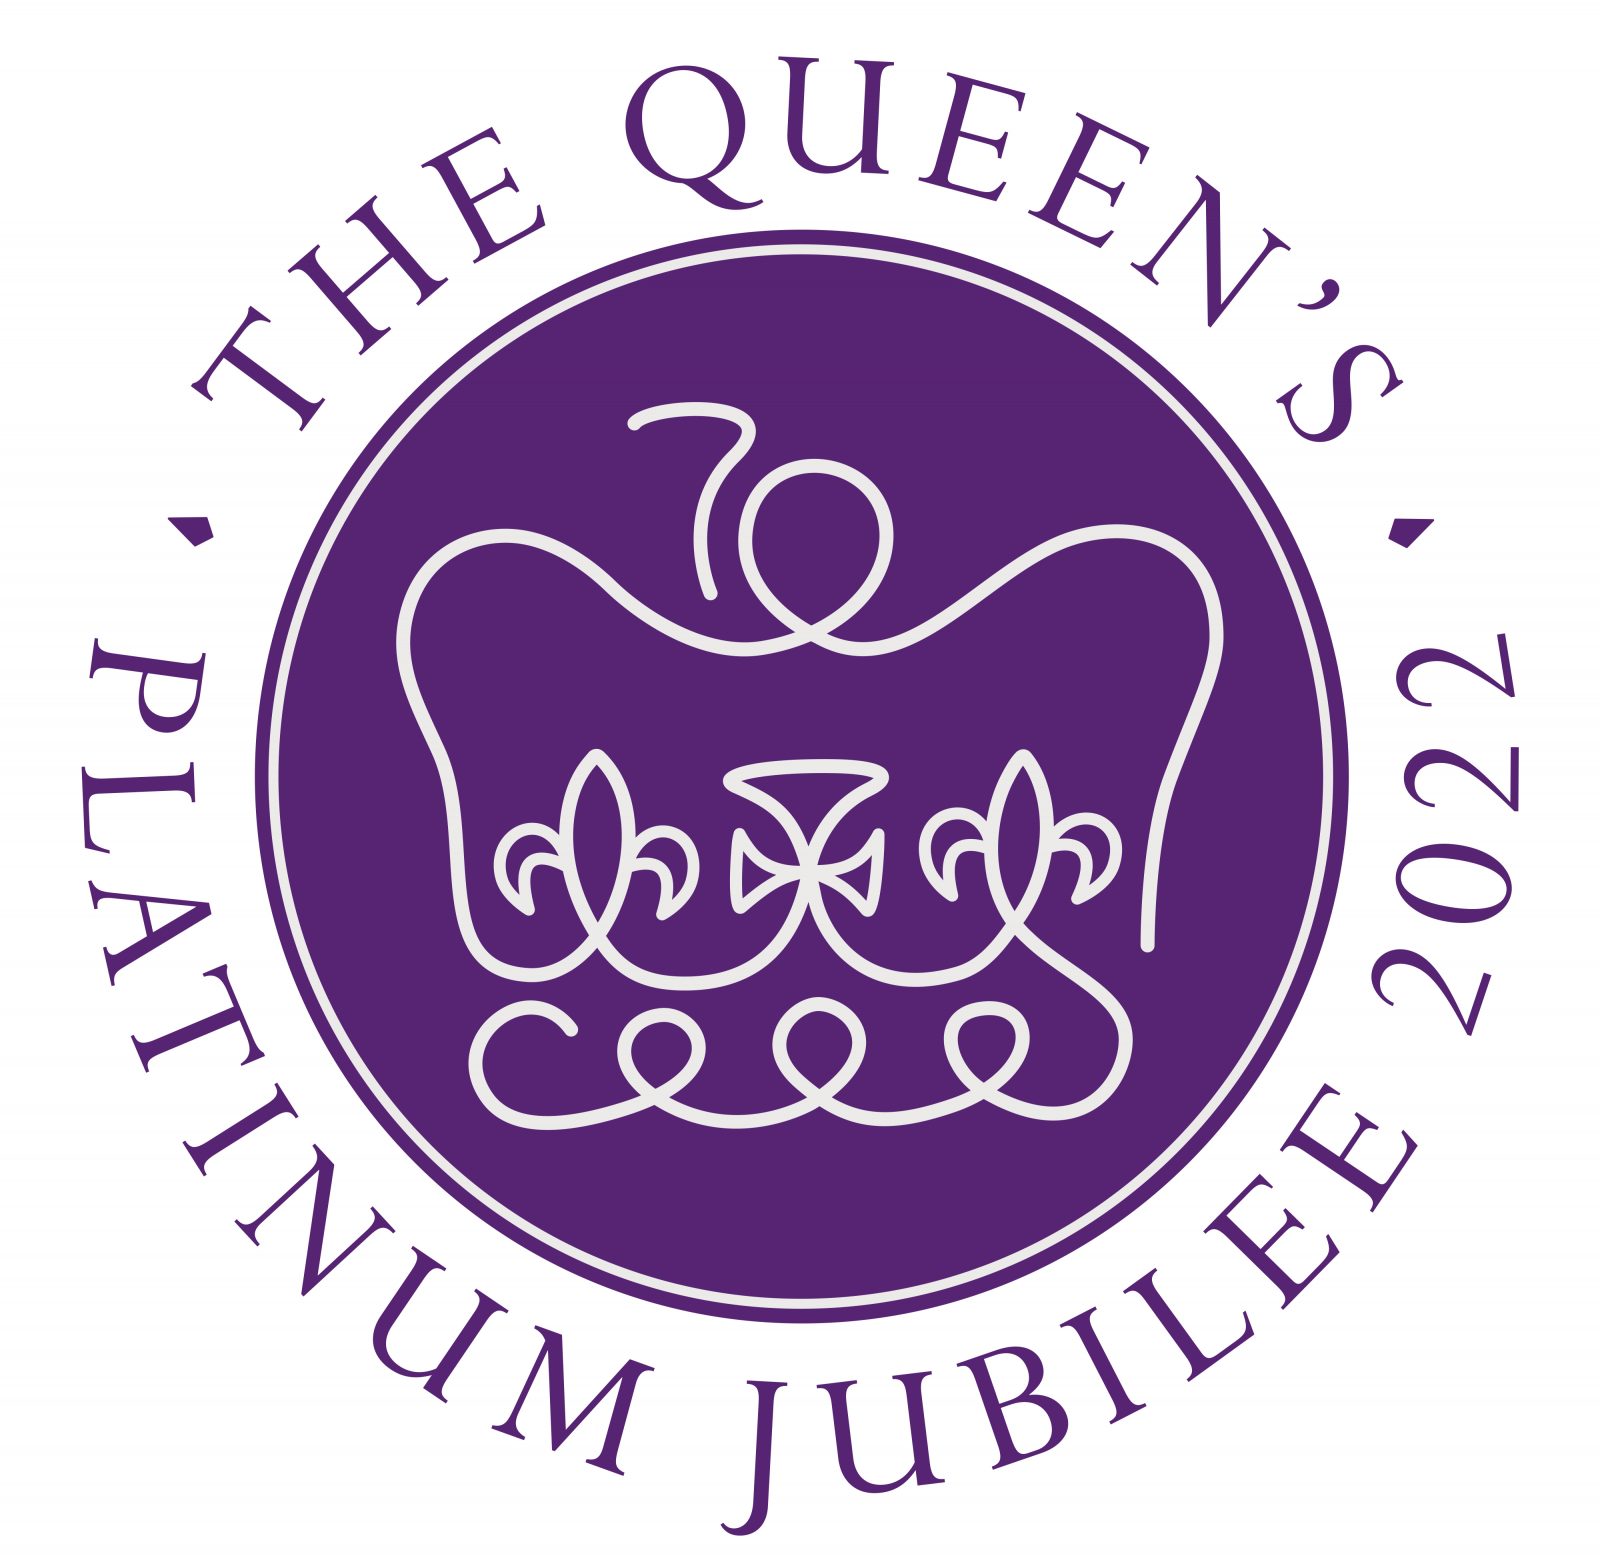 The Queen’s Platinum Jubilee Beacons